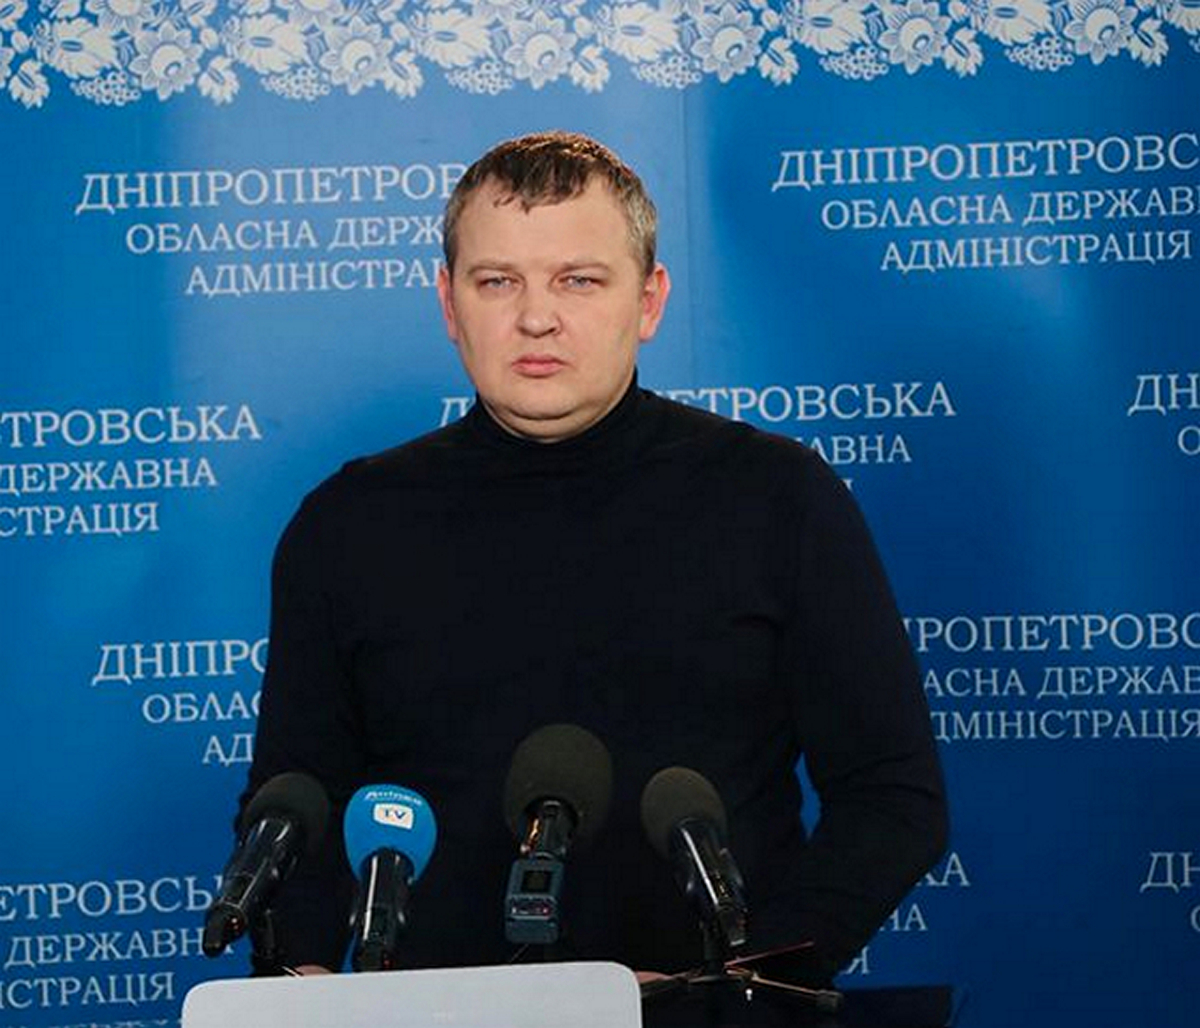 Депутати Дніпропетровщини отримують від окупантів пропозиції про співпрацю